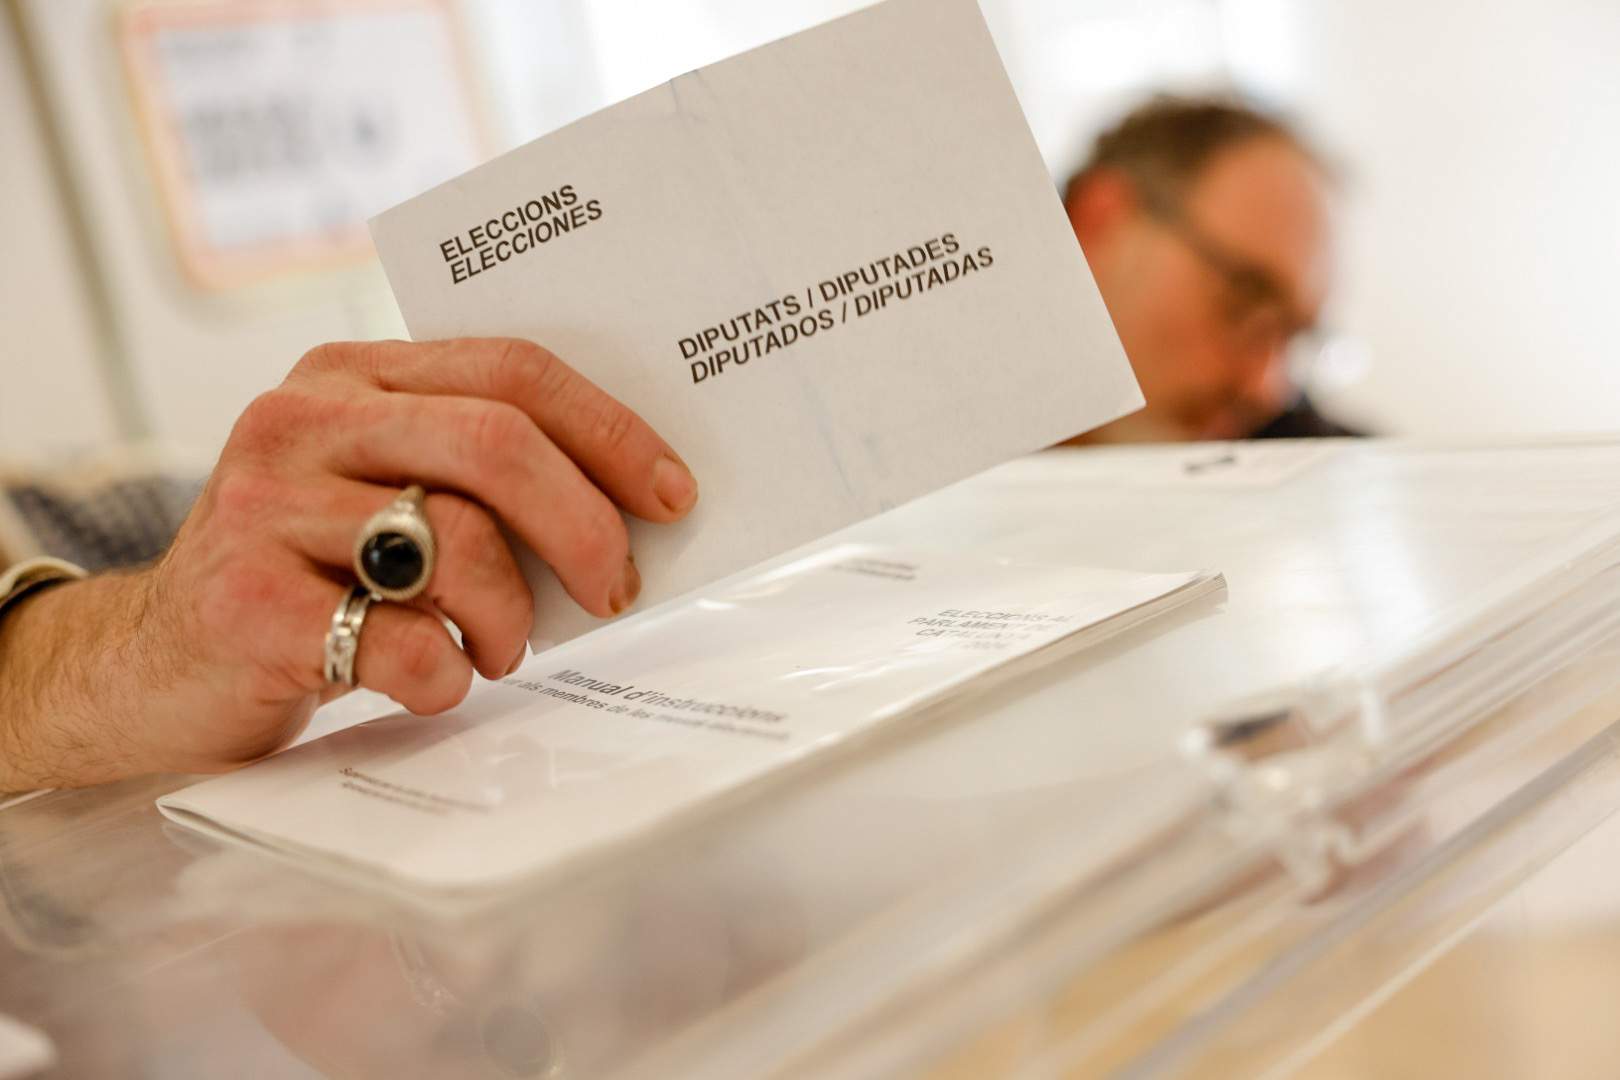 eleccions 12m papereta urna foto carlos baglietto